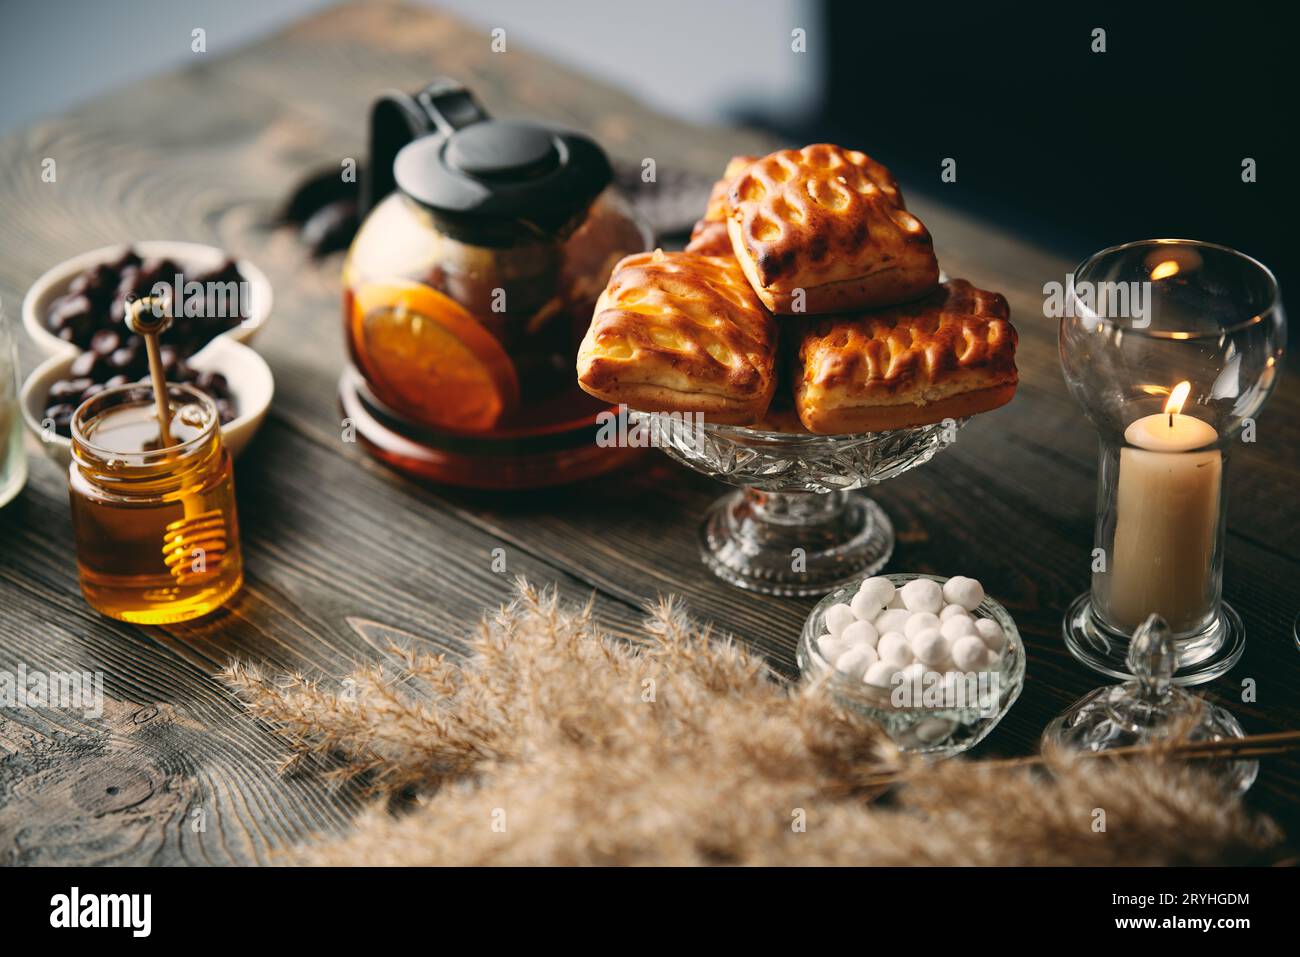 Pâtisseries maison sur la table joliment servie décorée dans un style rustique Banque D'Images